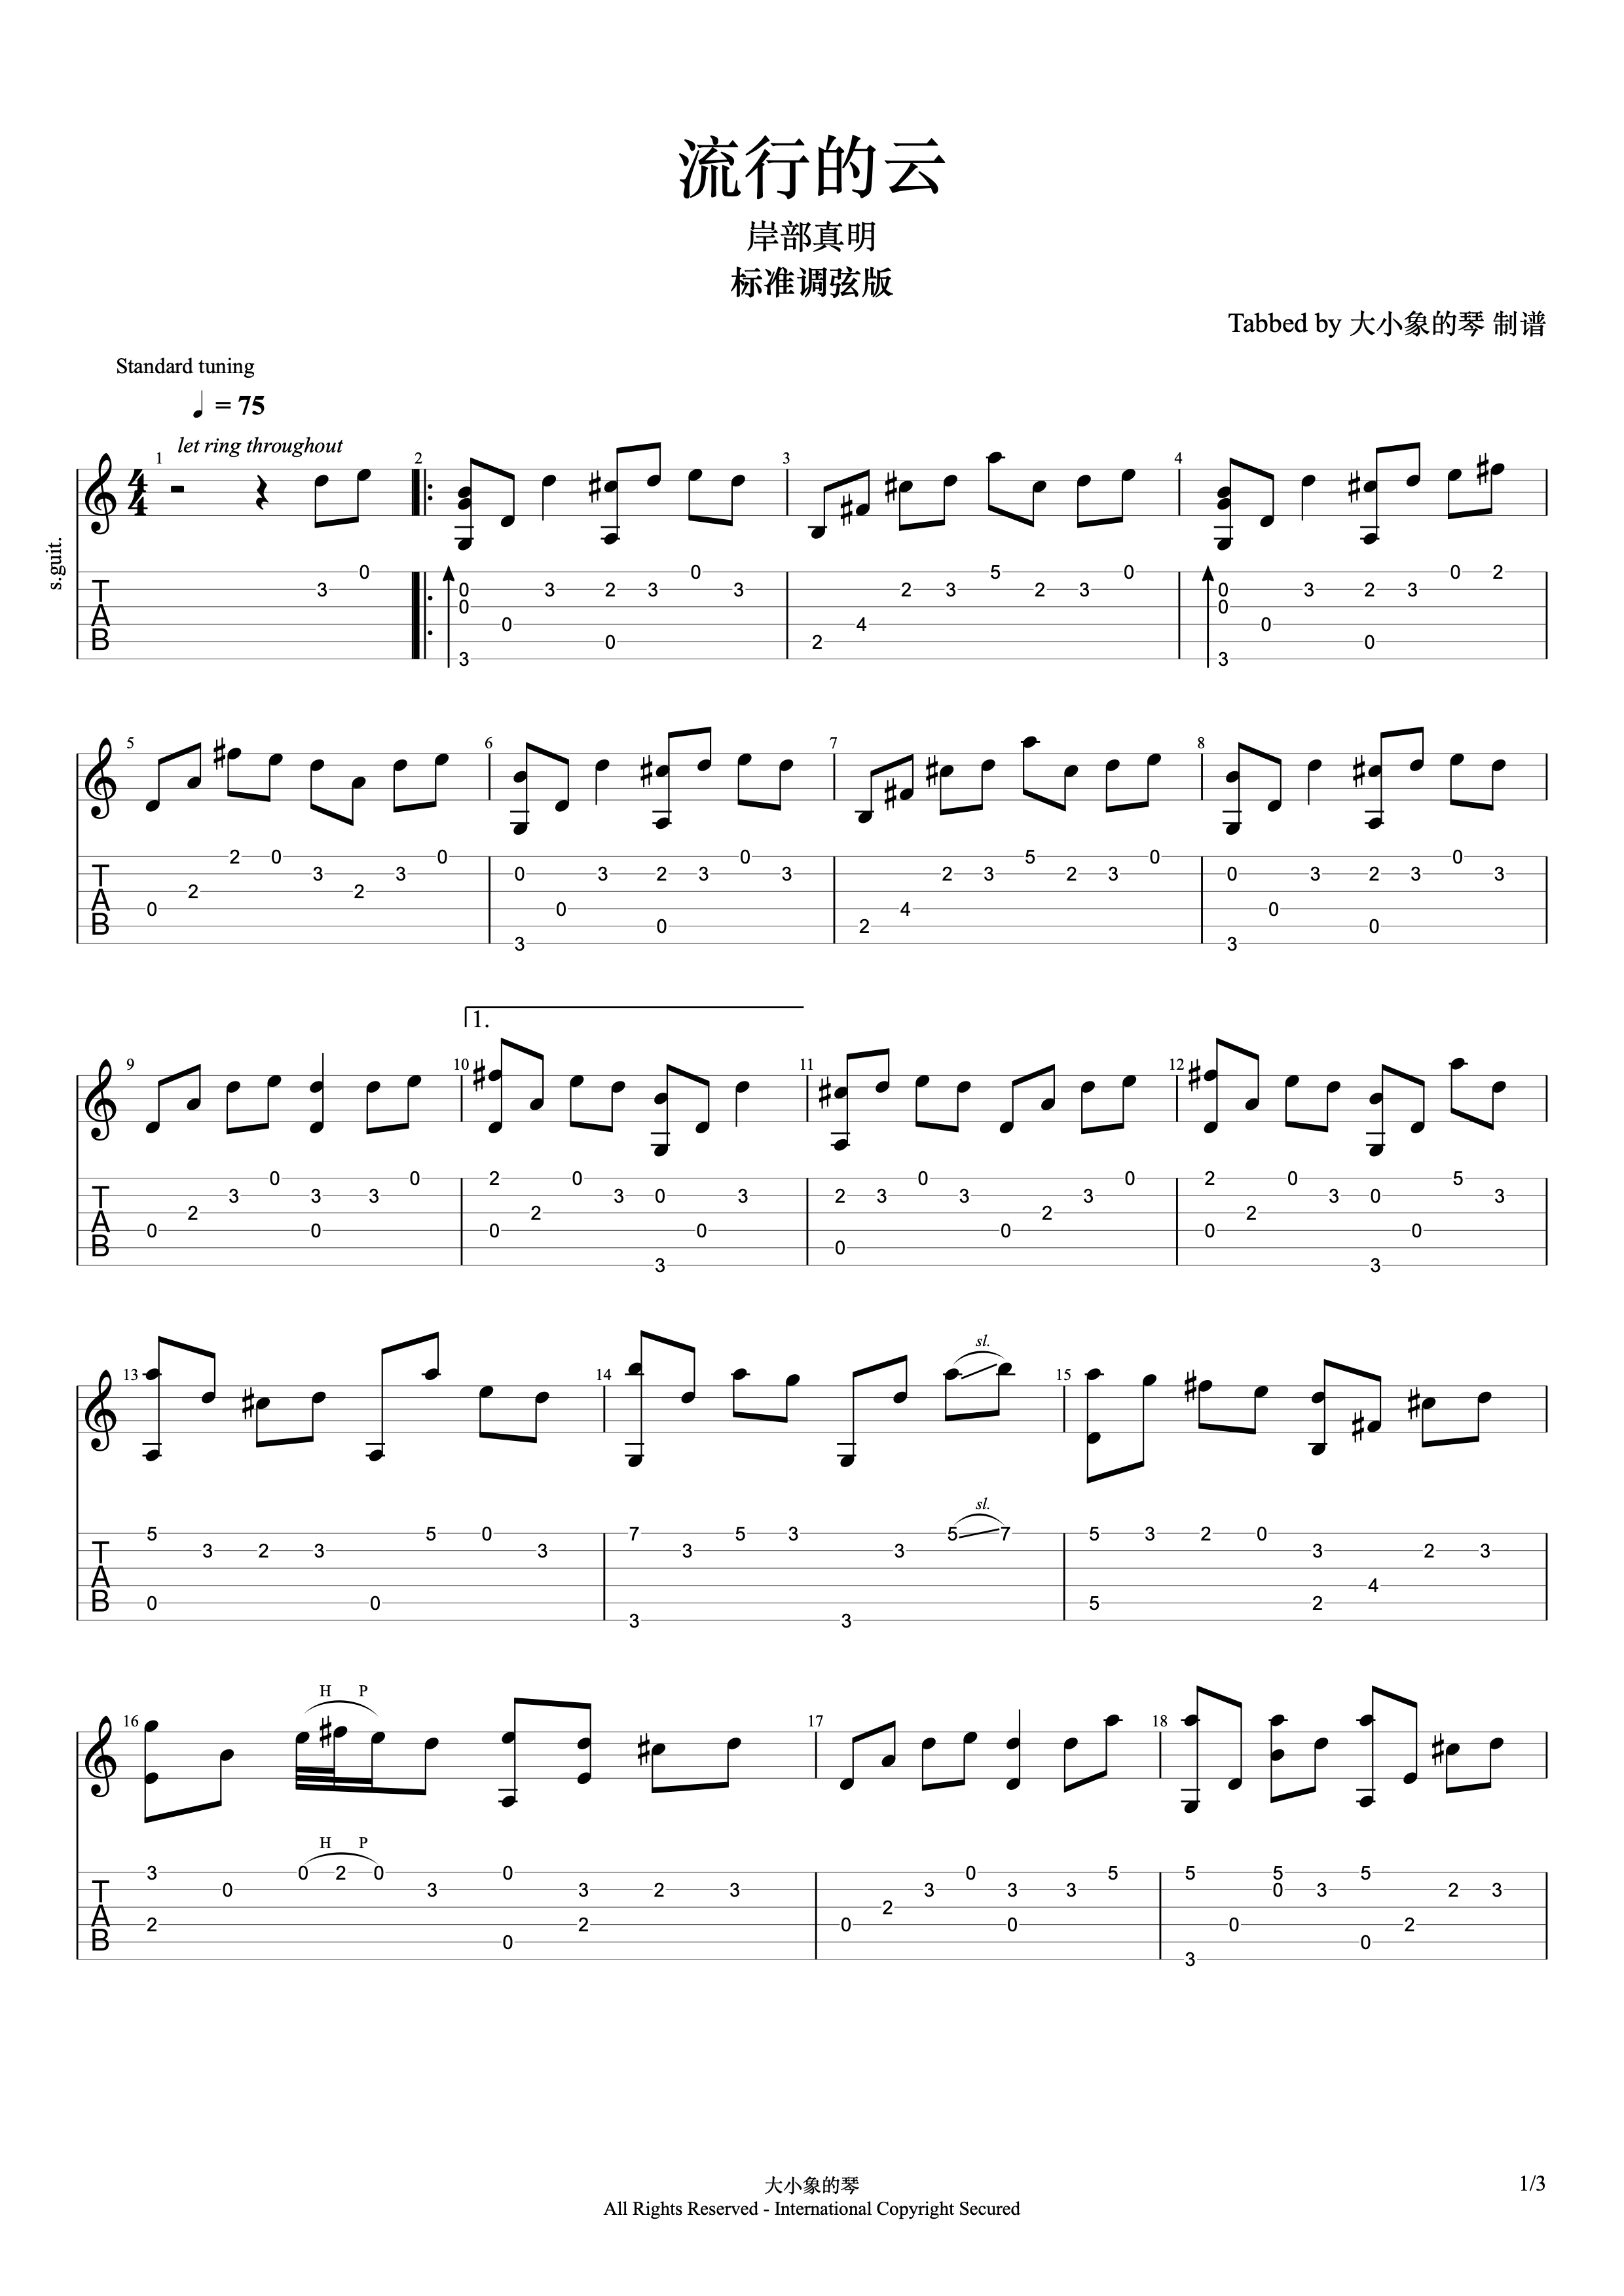 流行的云吉他谱，其中和弦用“532313-韩语宸 - 弹琴吧